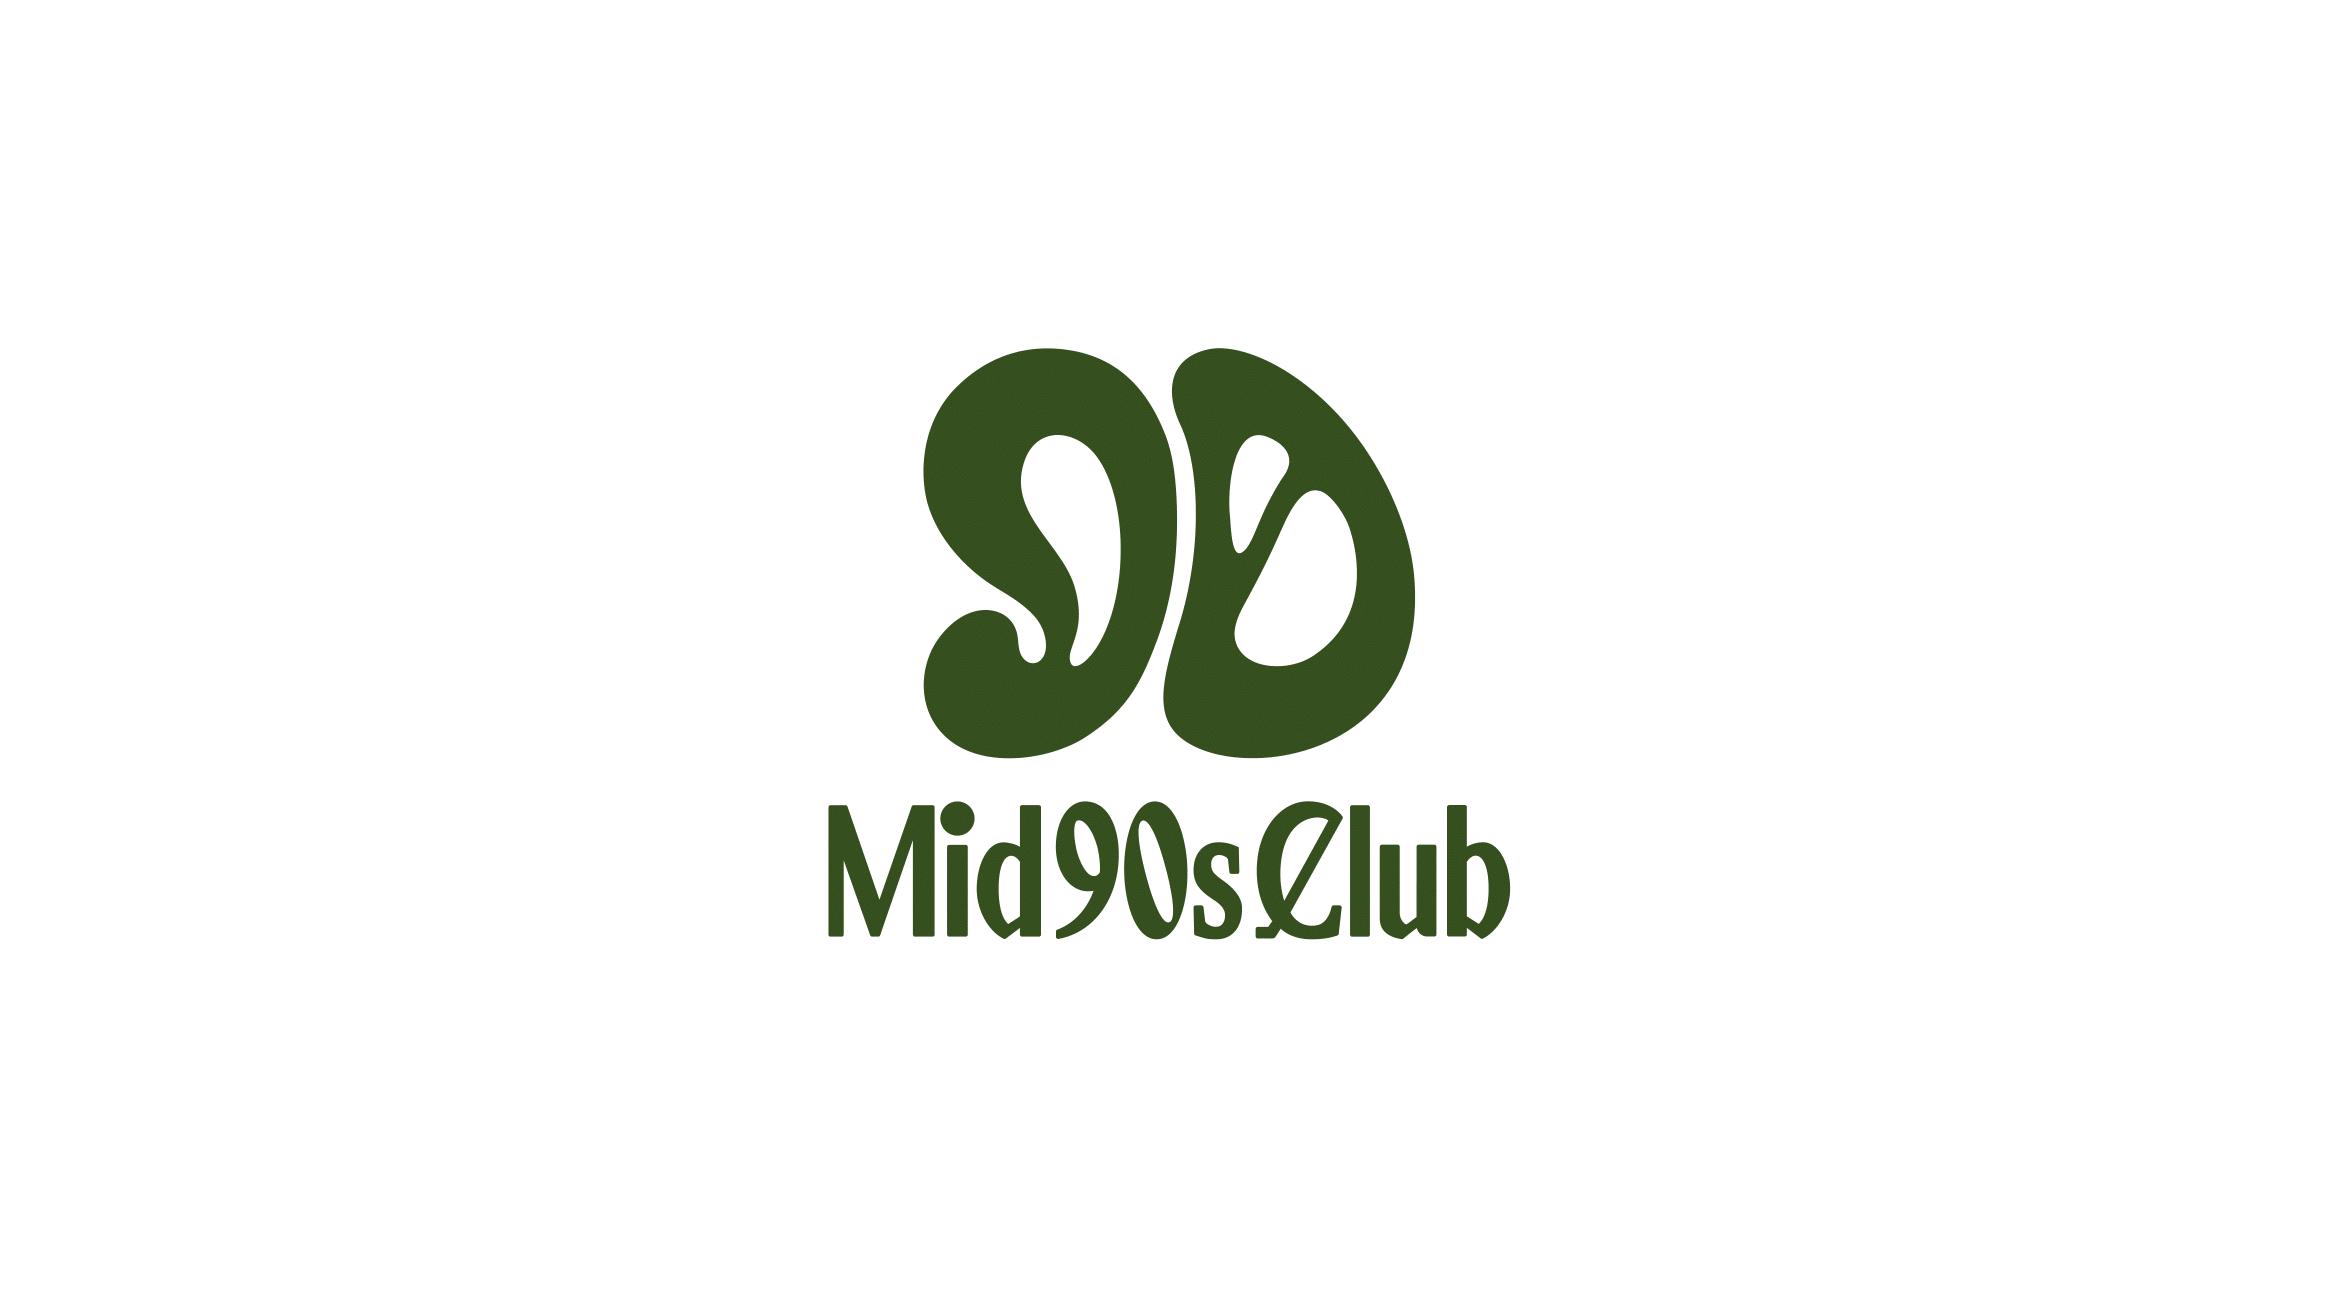 【送料無料SALE】Mid 90s Club×Cph/Golf ADJUSTABLE PANTS パンツ